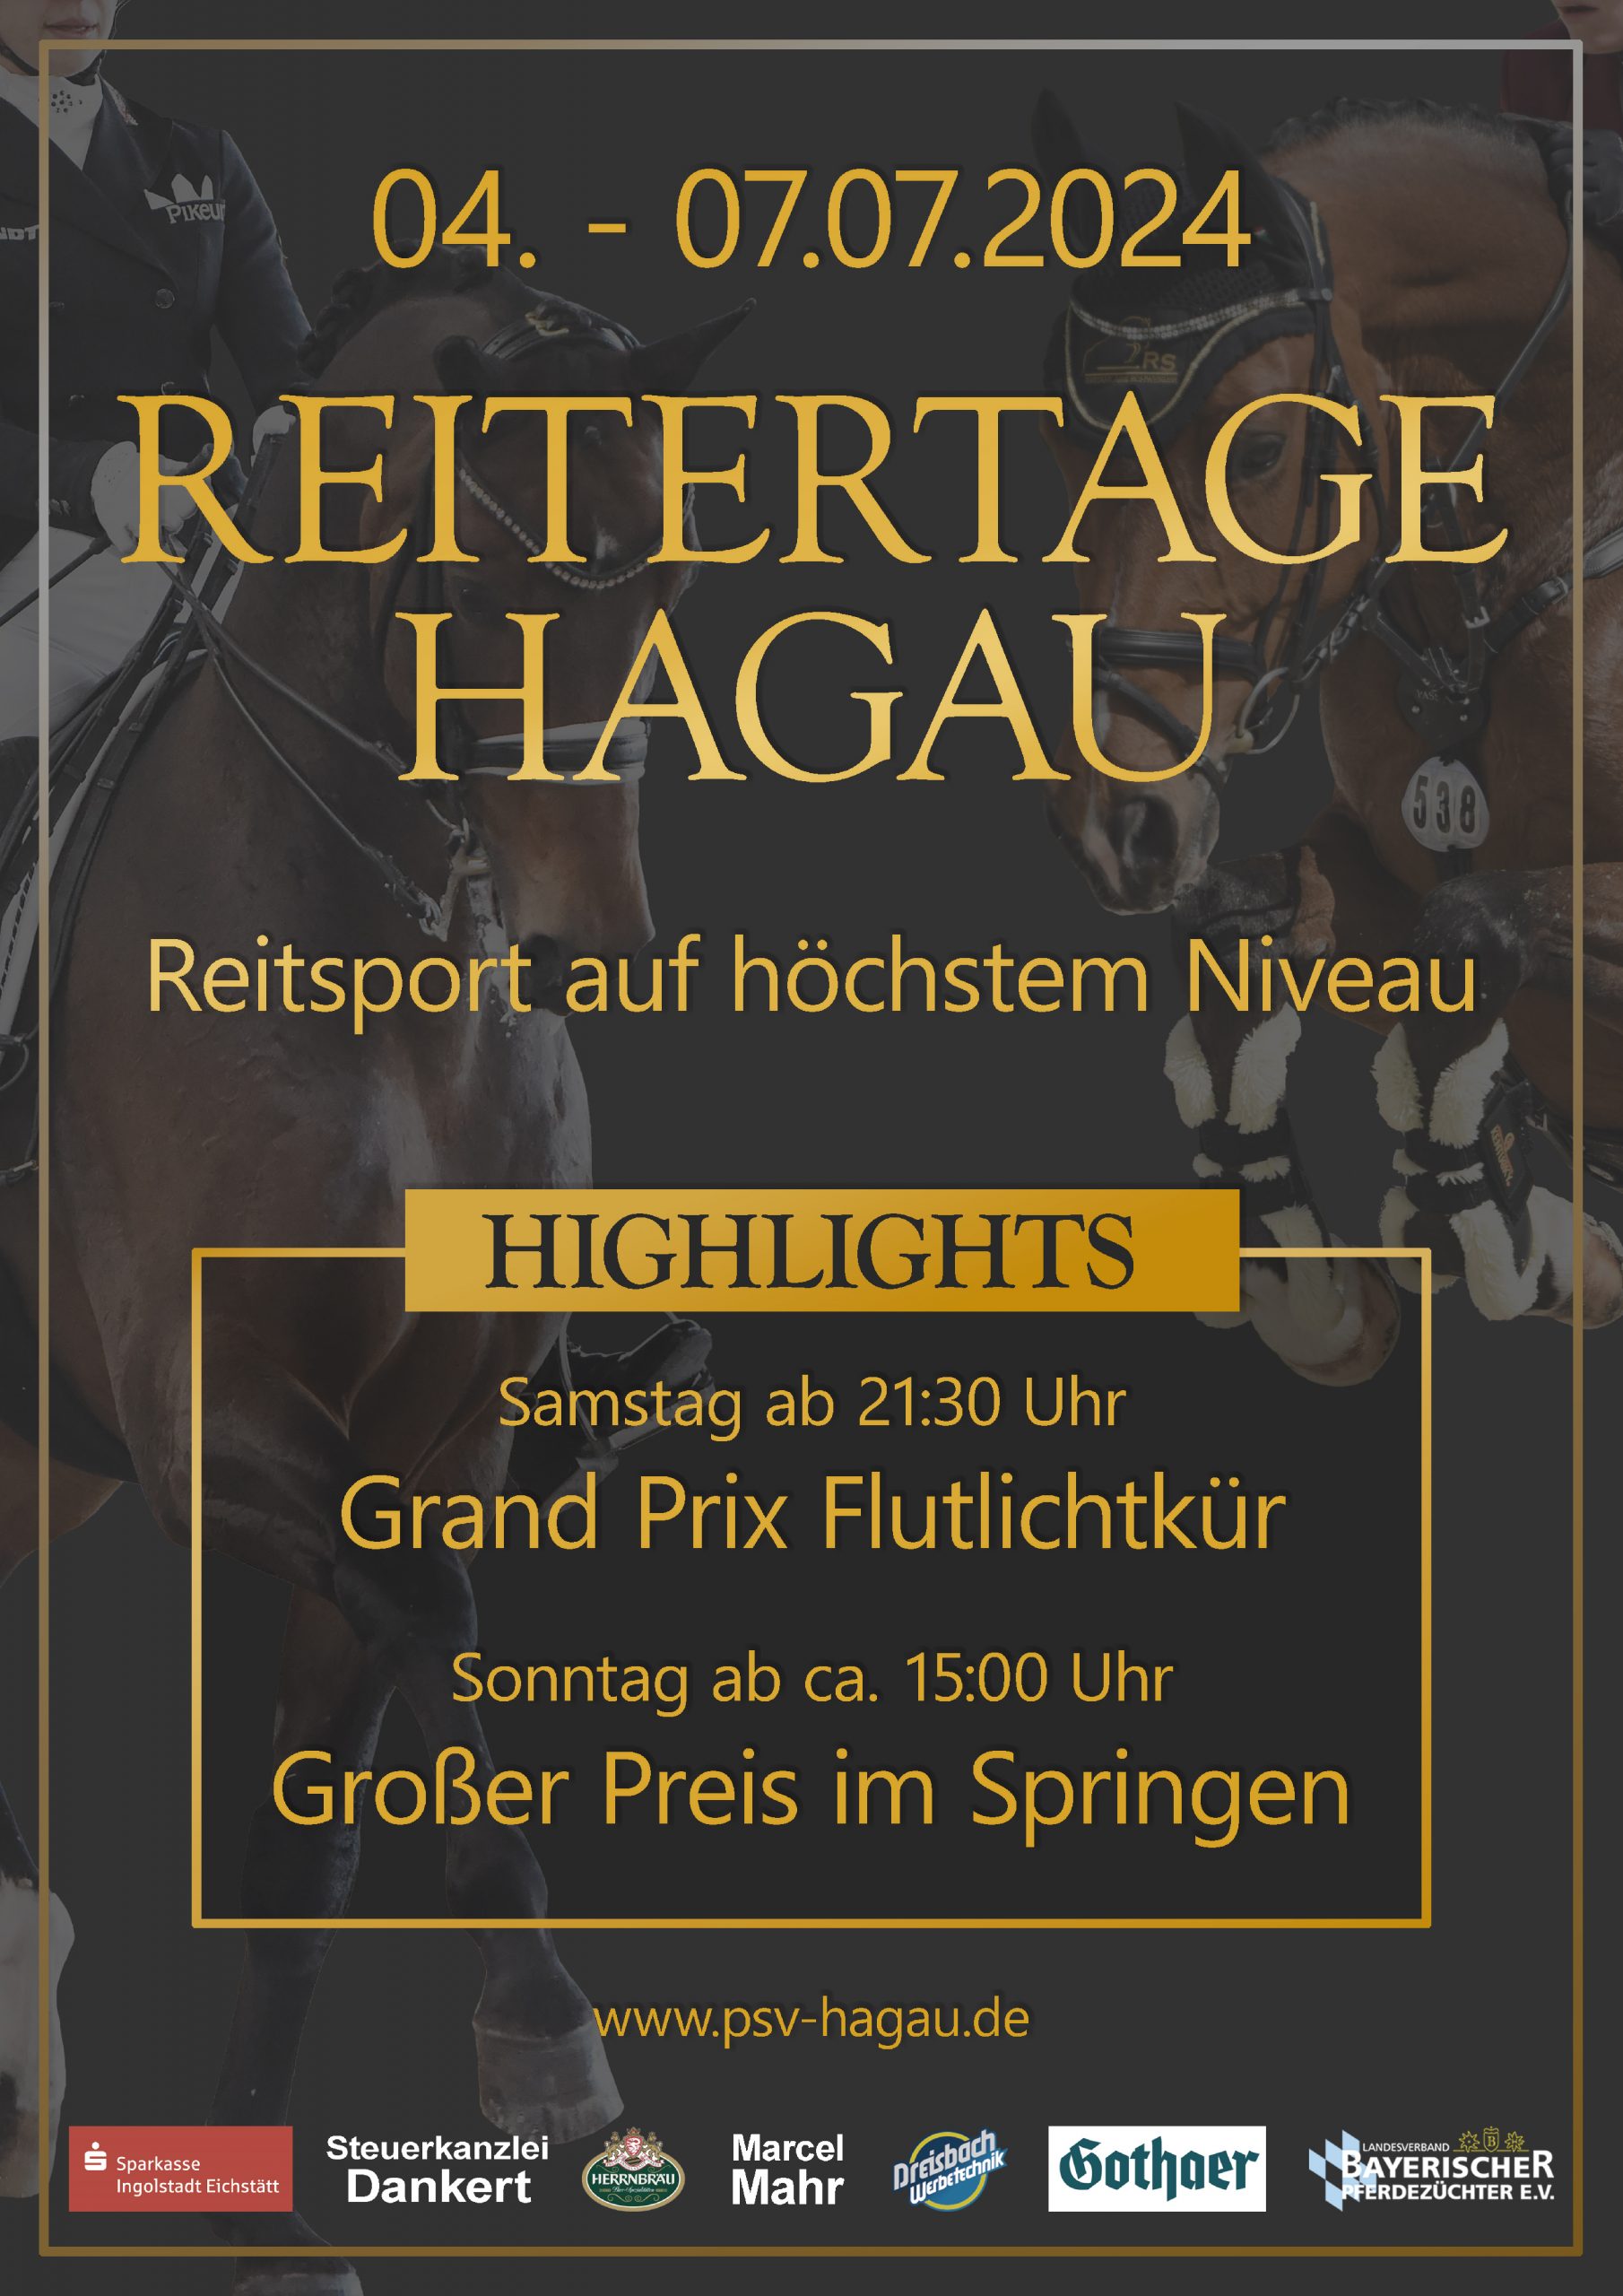 Werbeplakat in schwarz und gold für die Reitertage Hagau vom 4.-7.7. mit Nennung der Highlights und Sponsoren